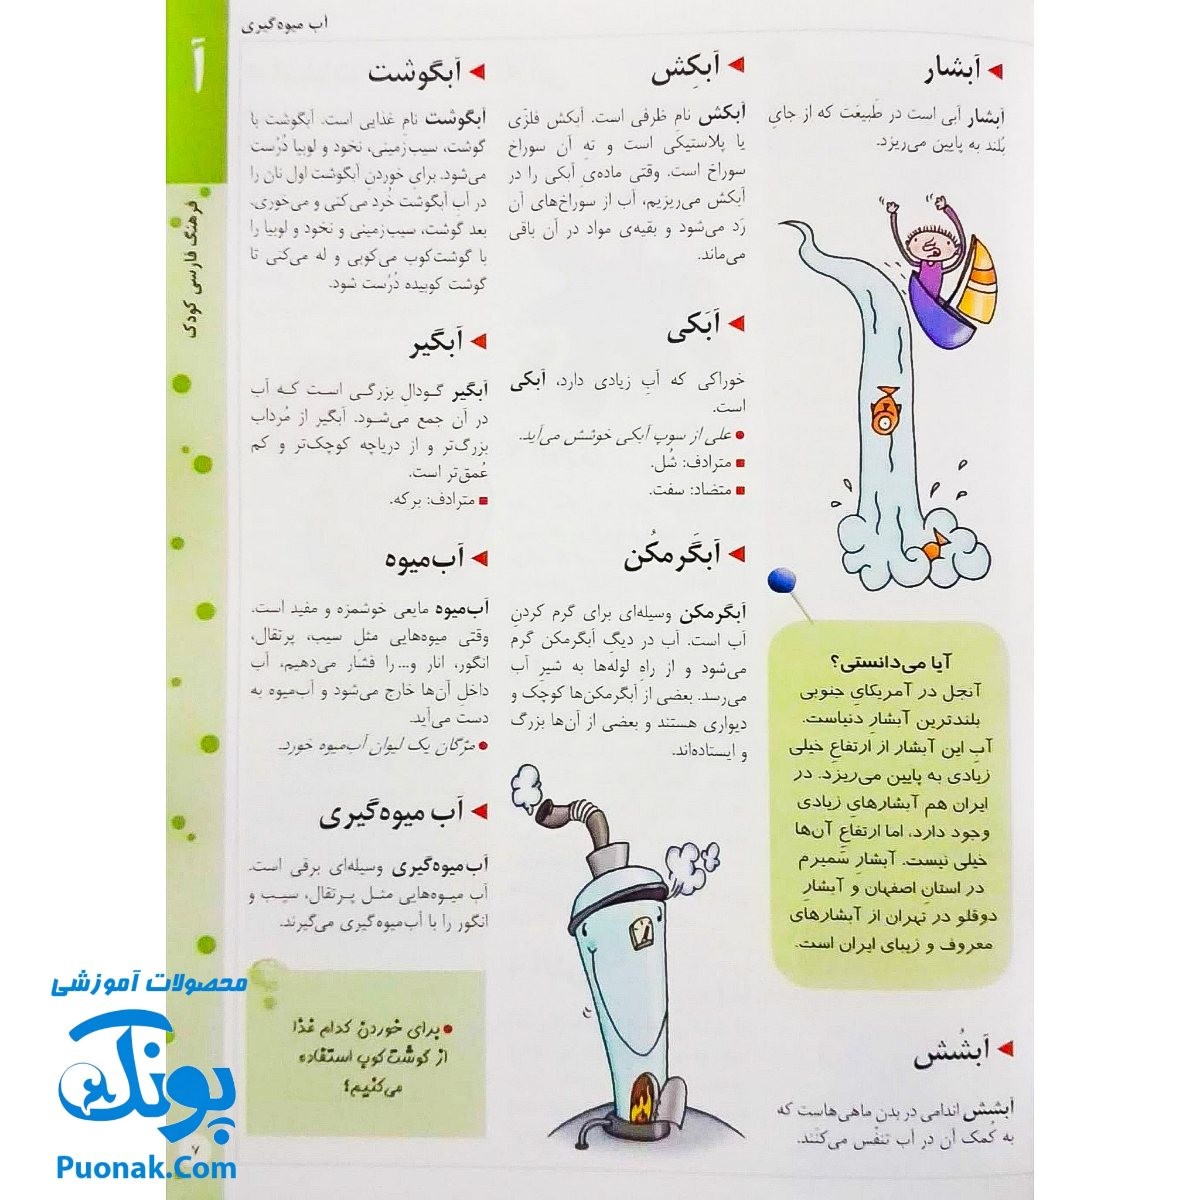 کتاب فرهنگ فارسی کودک (با بیش از ۱۷۰۰ کلمه و ۵۰۰ تصویر رنگی) ویرایش جدید